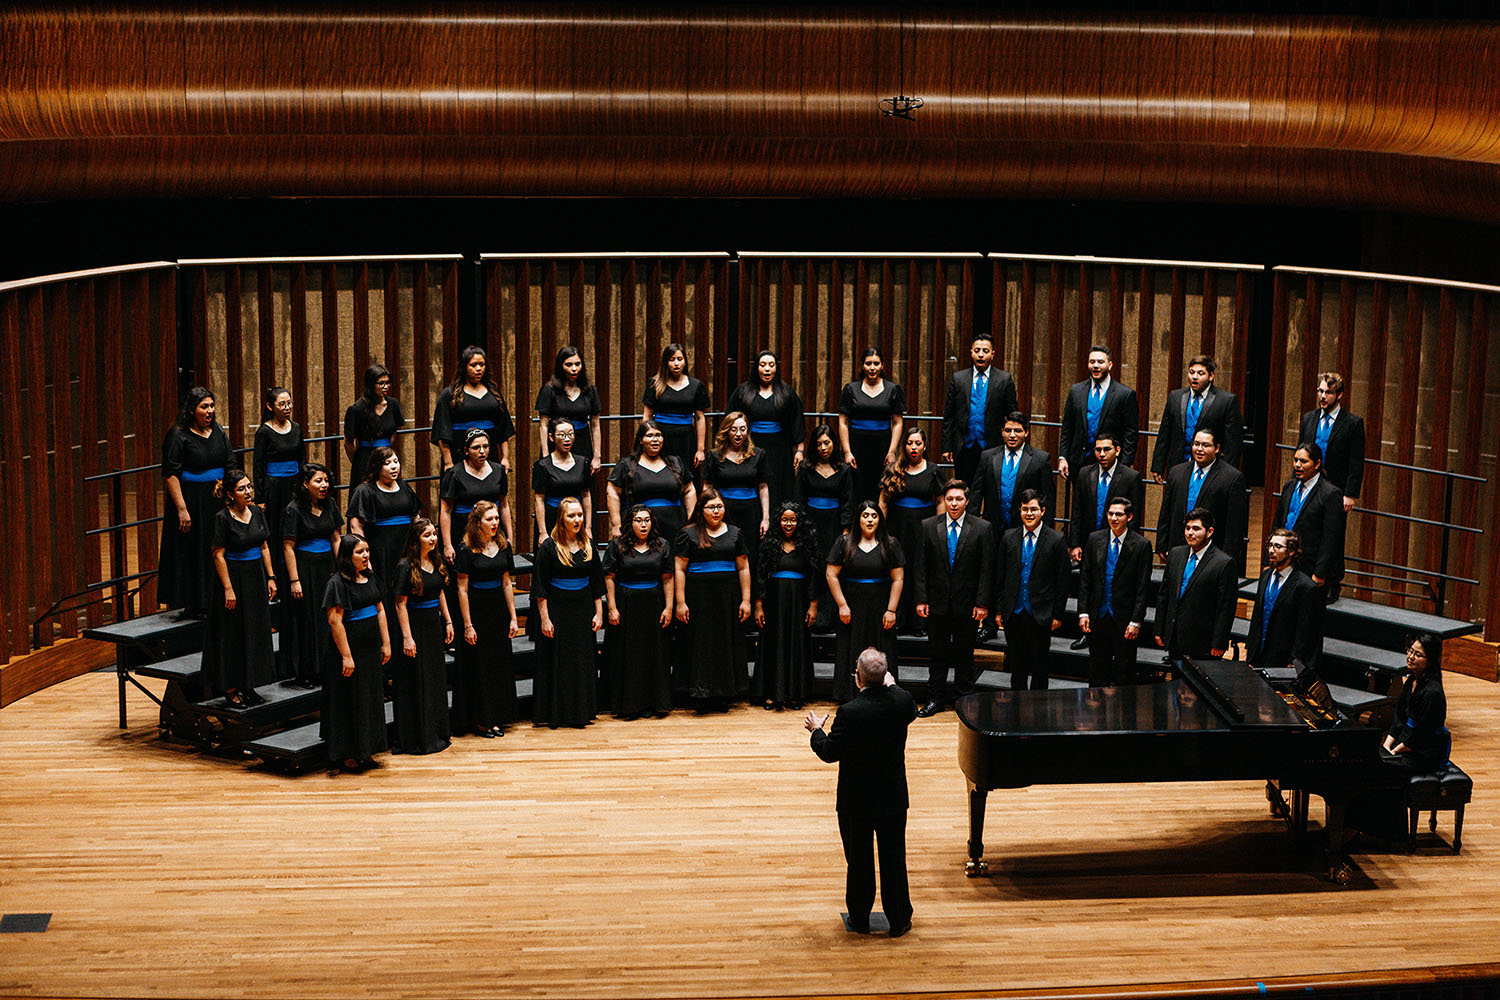 Texas A&M University-Kingsville's Concert Choir